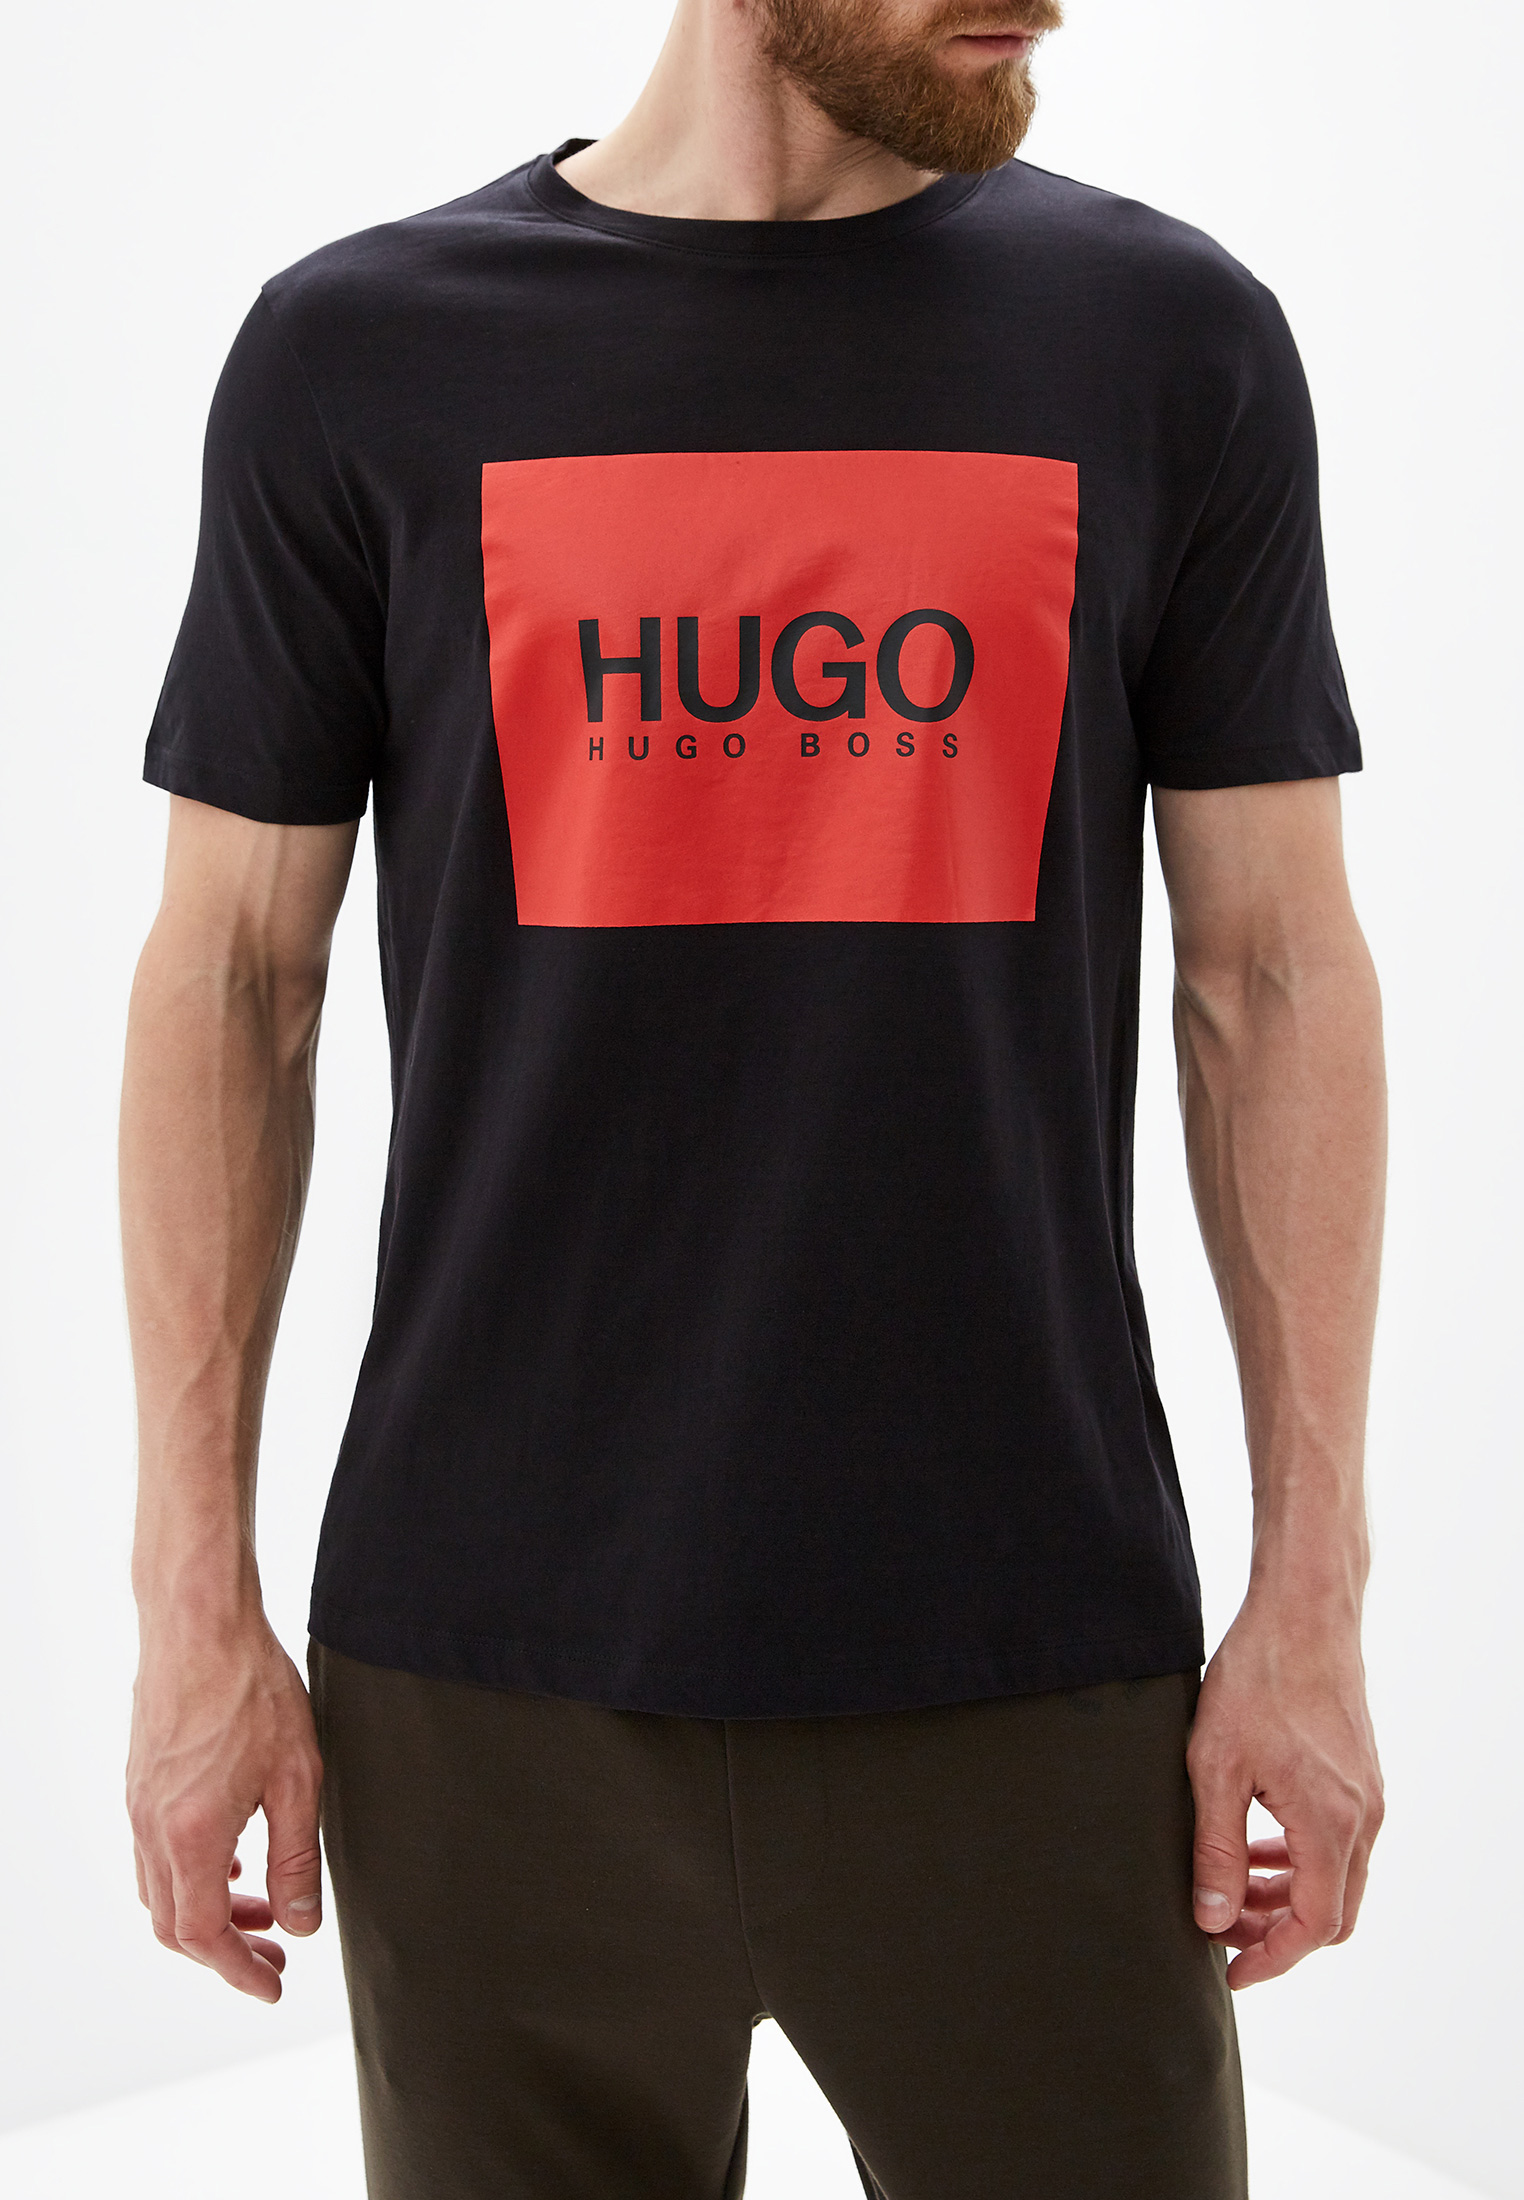 Купить футболку hugo. Футболка Хуго босс 2009-. Майка Хуго босс черная. Футболка Hugo Boss 2022. Футболка Хуго босс черная.